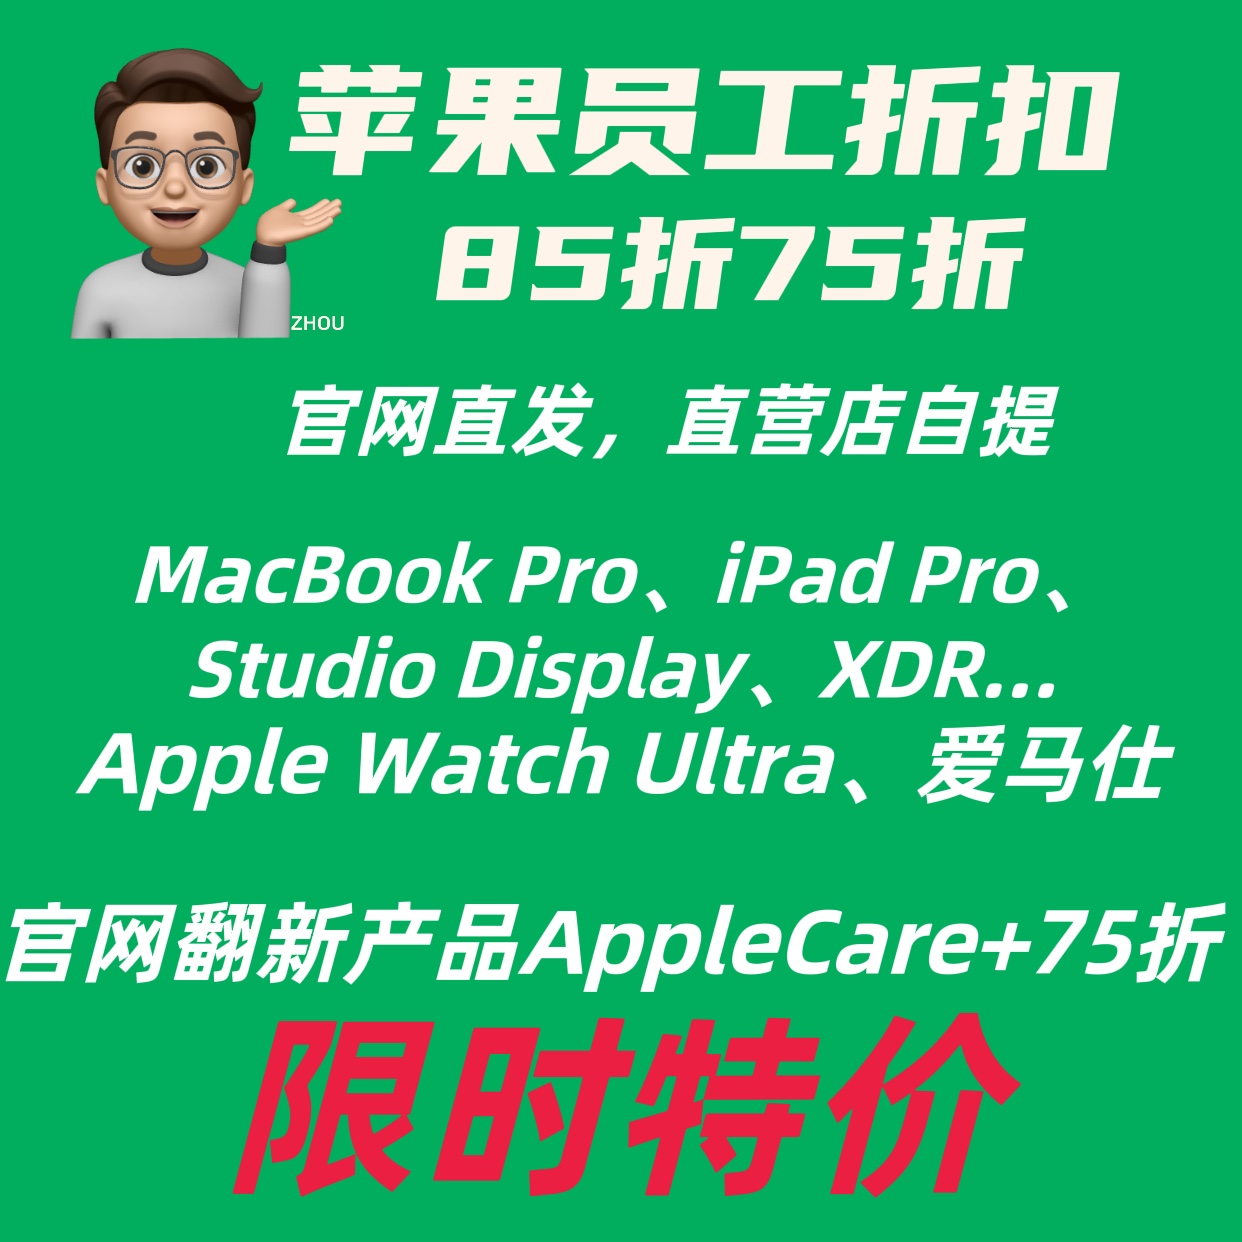 苹果员工折扣85折Apple员工折扣员工epp优惠促销官网翻新Mac-淘宝网